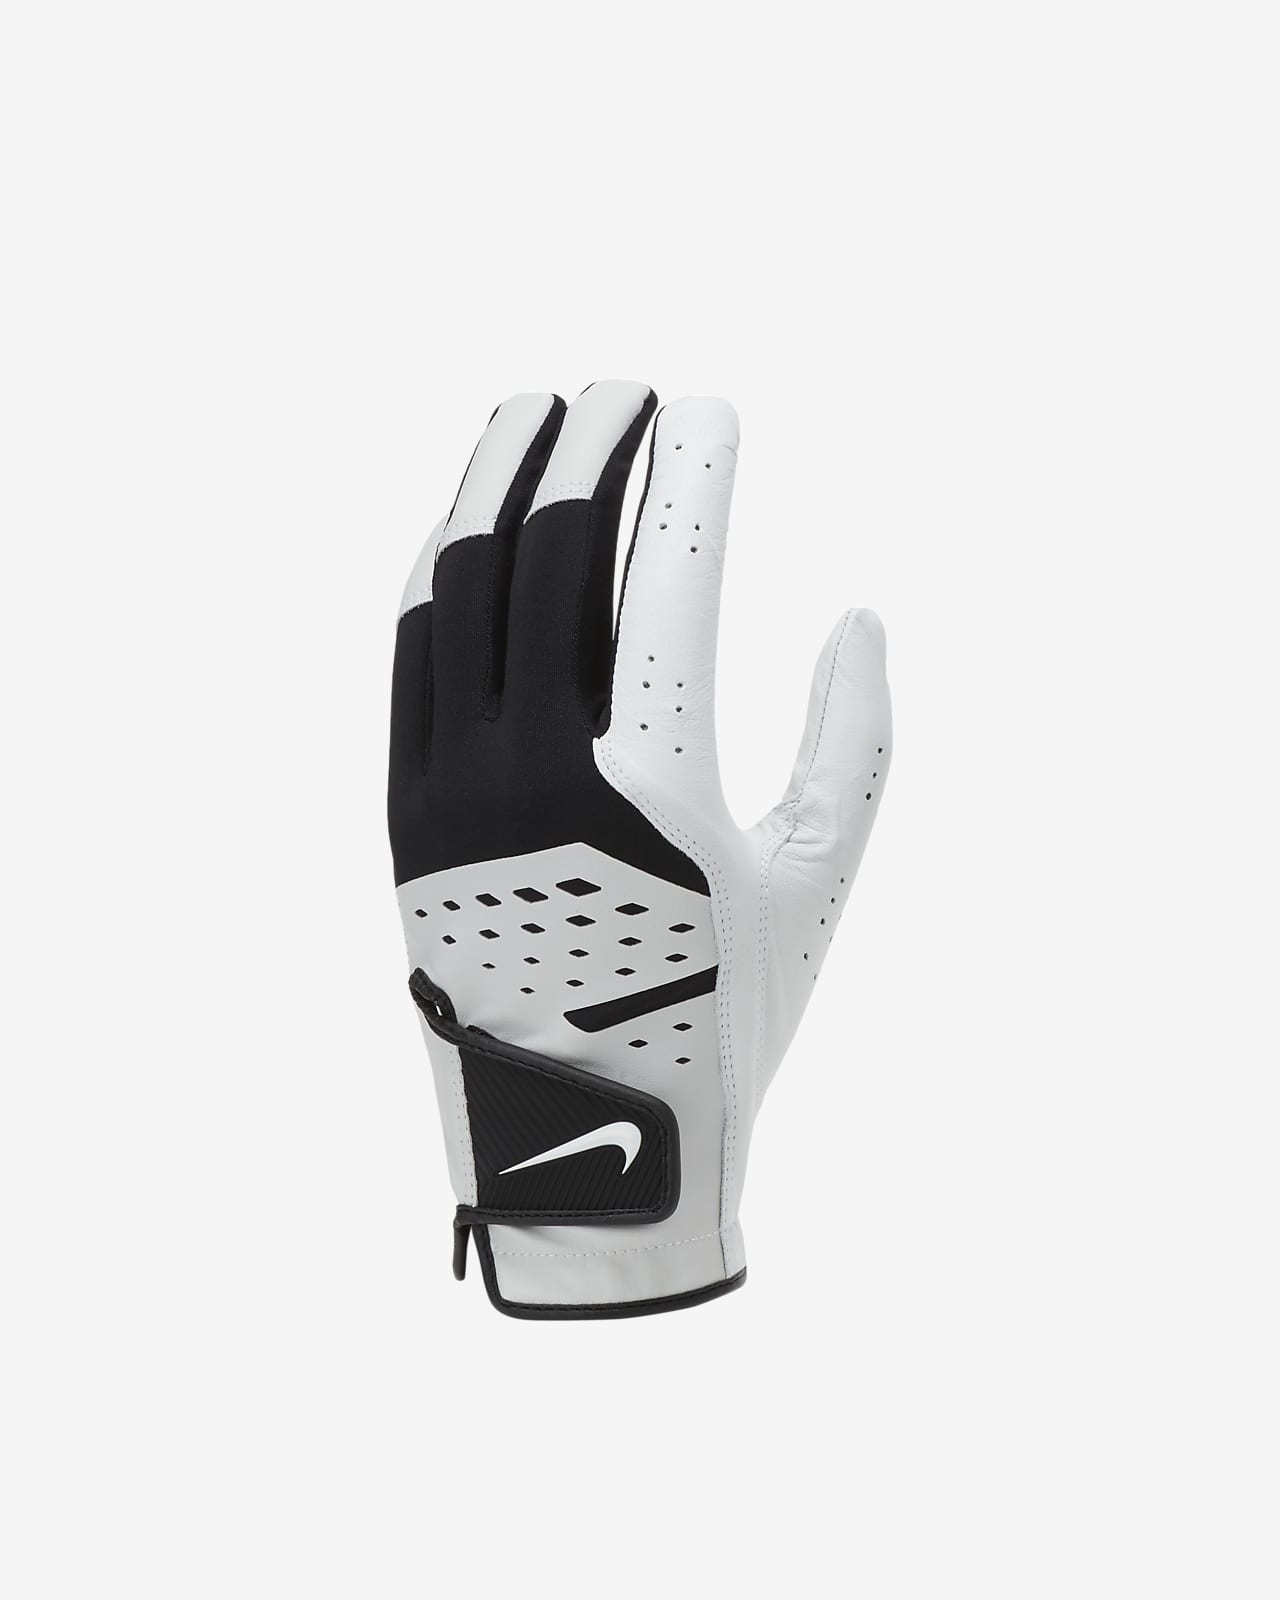 Rękawiczka do golfa Nike Tech Extreme 7 (standardowa, na lewą dłoń)